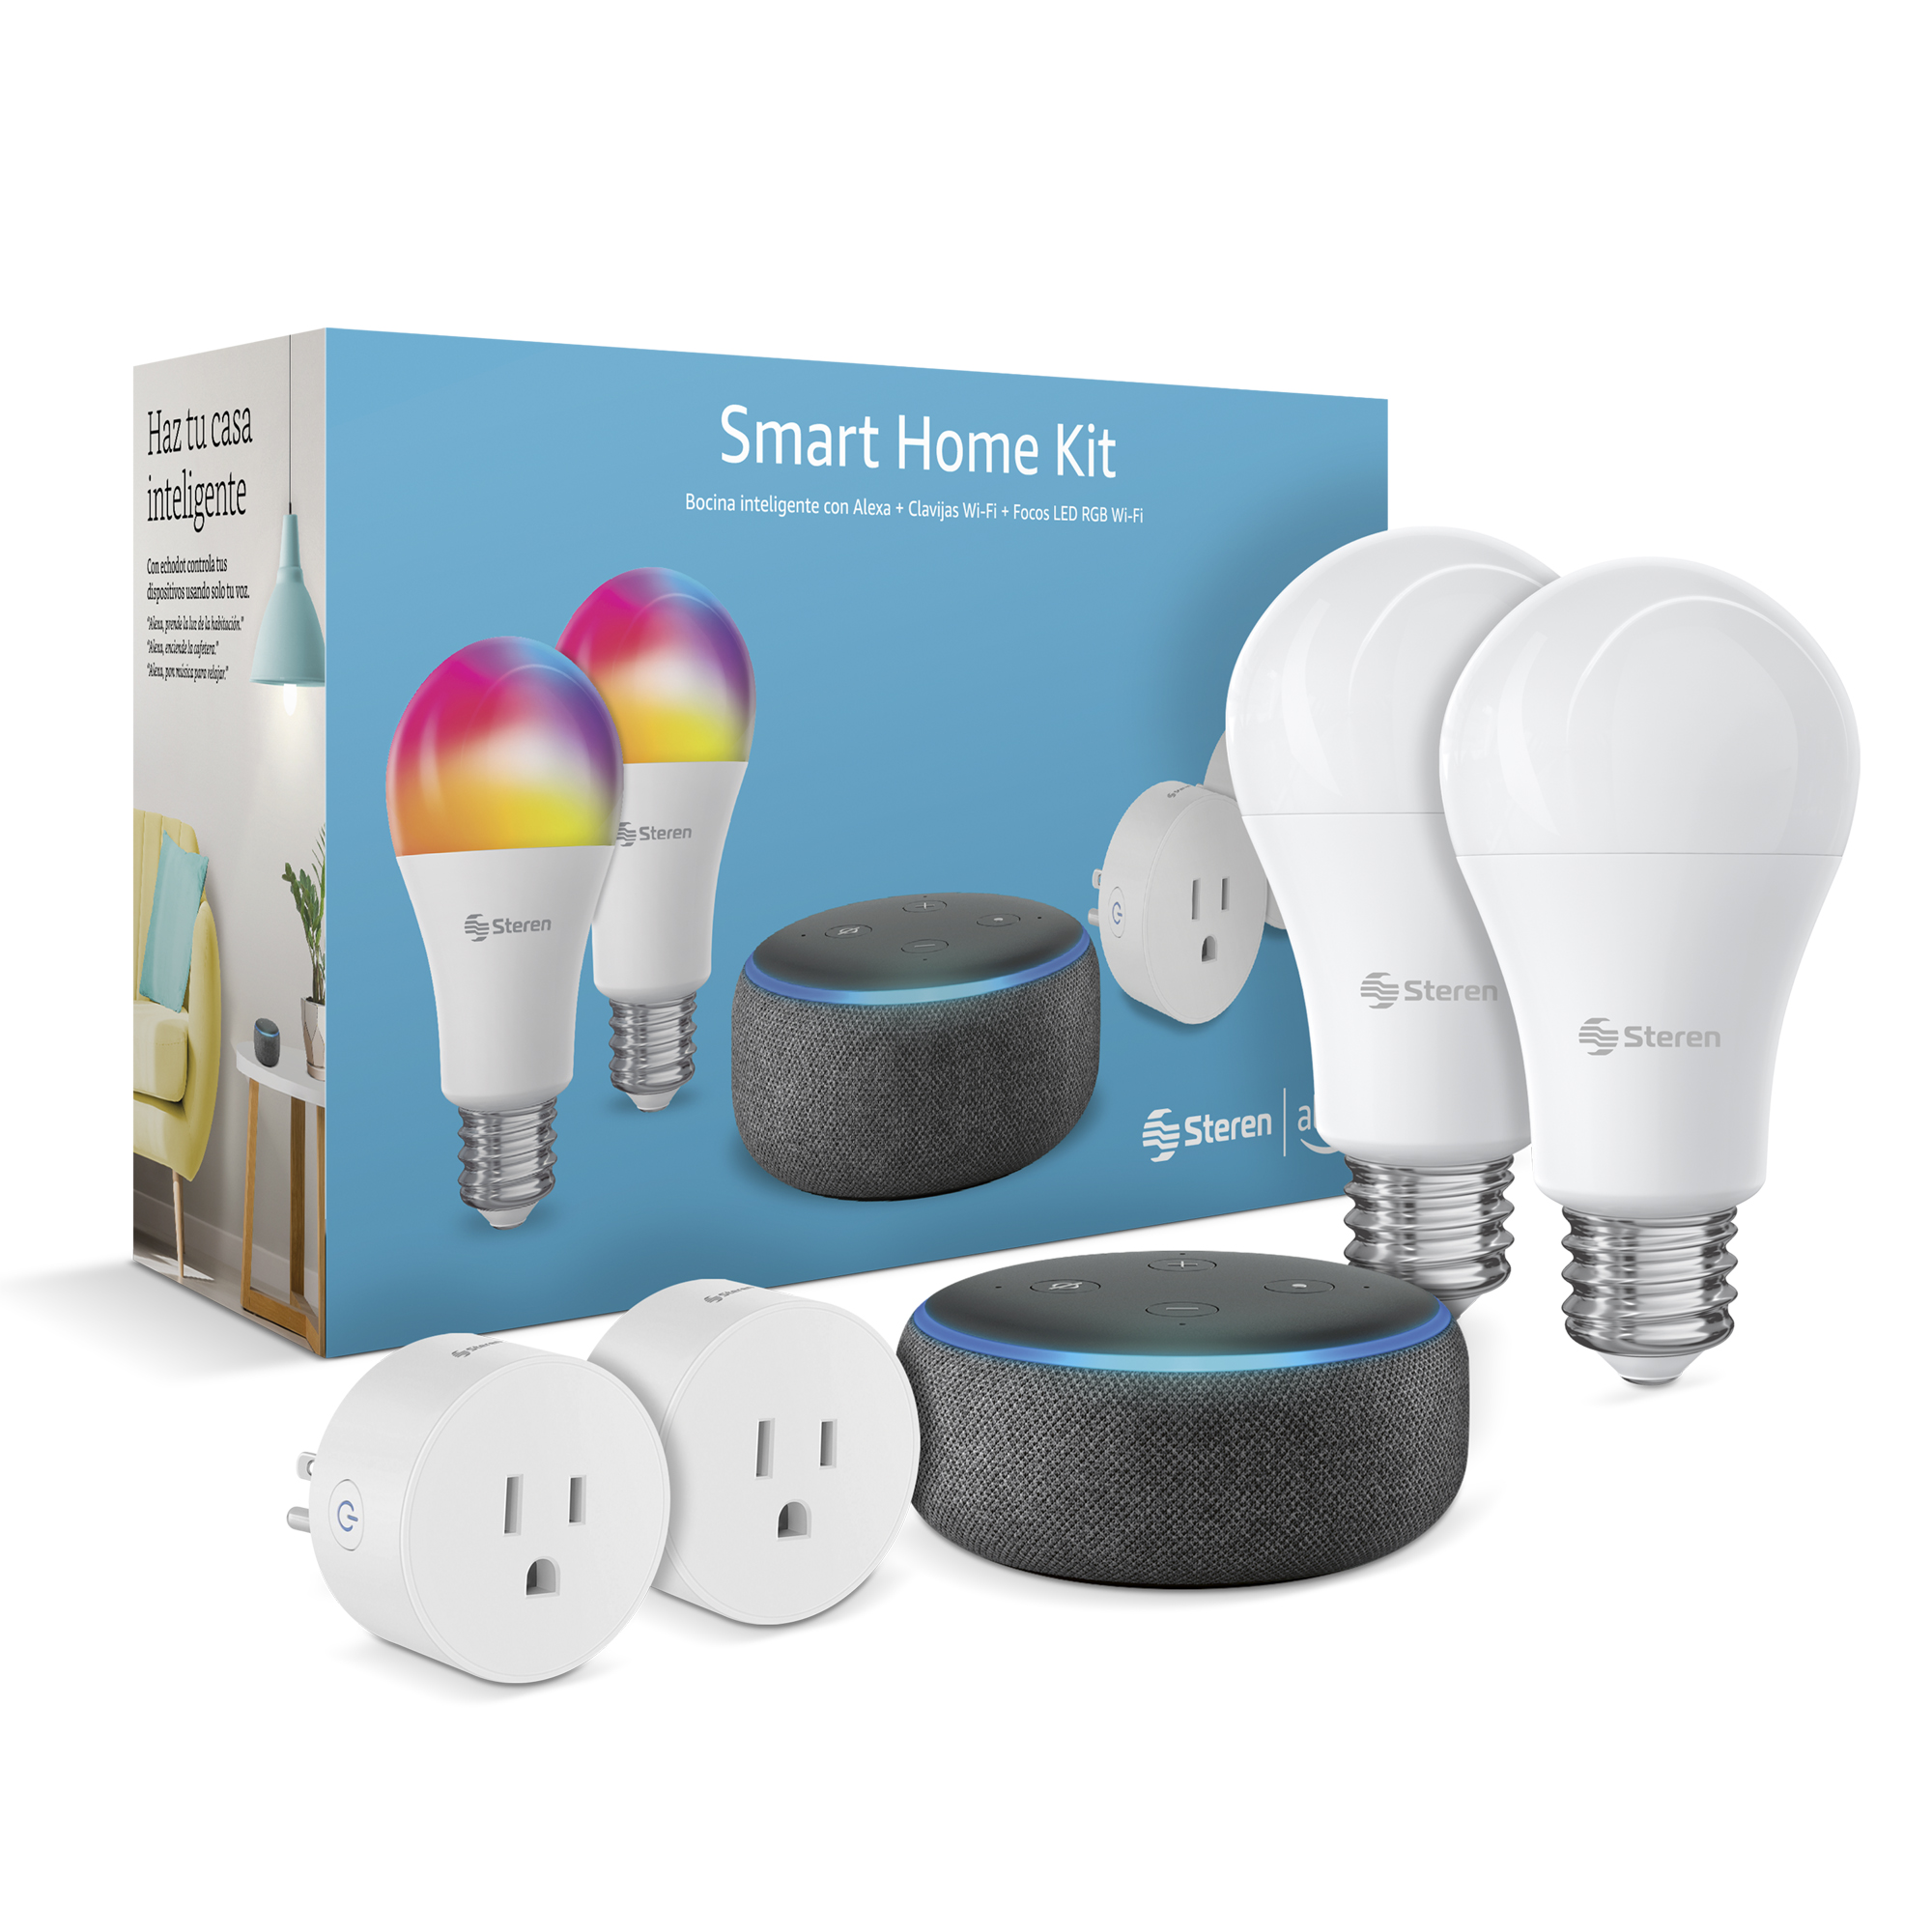 Steren Paquete Smart Home Alexa Focos y Contactos Wi-Fi PACK-SHO-02